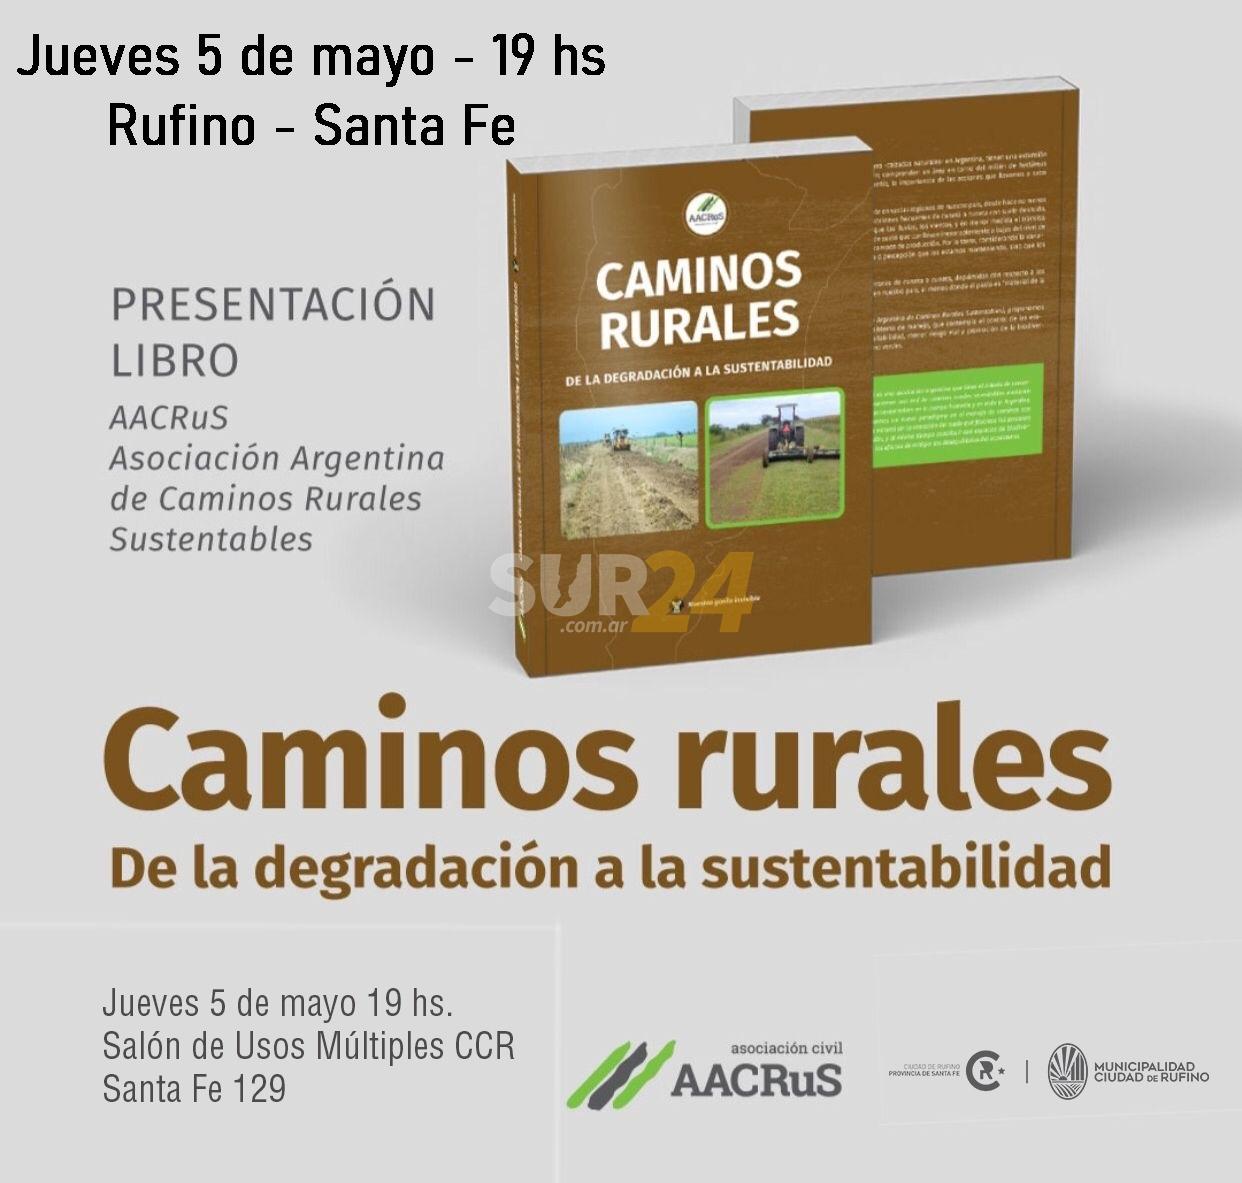 Presentan libro sobre caminos rurales este jueves en Rufino